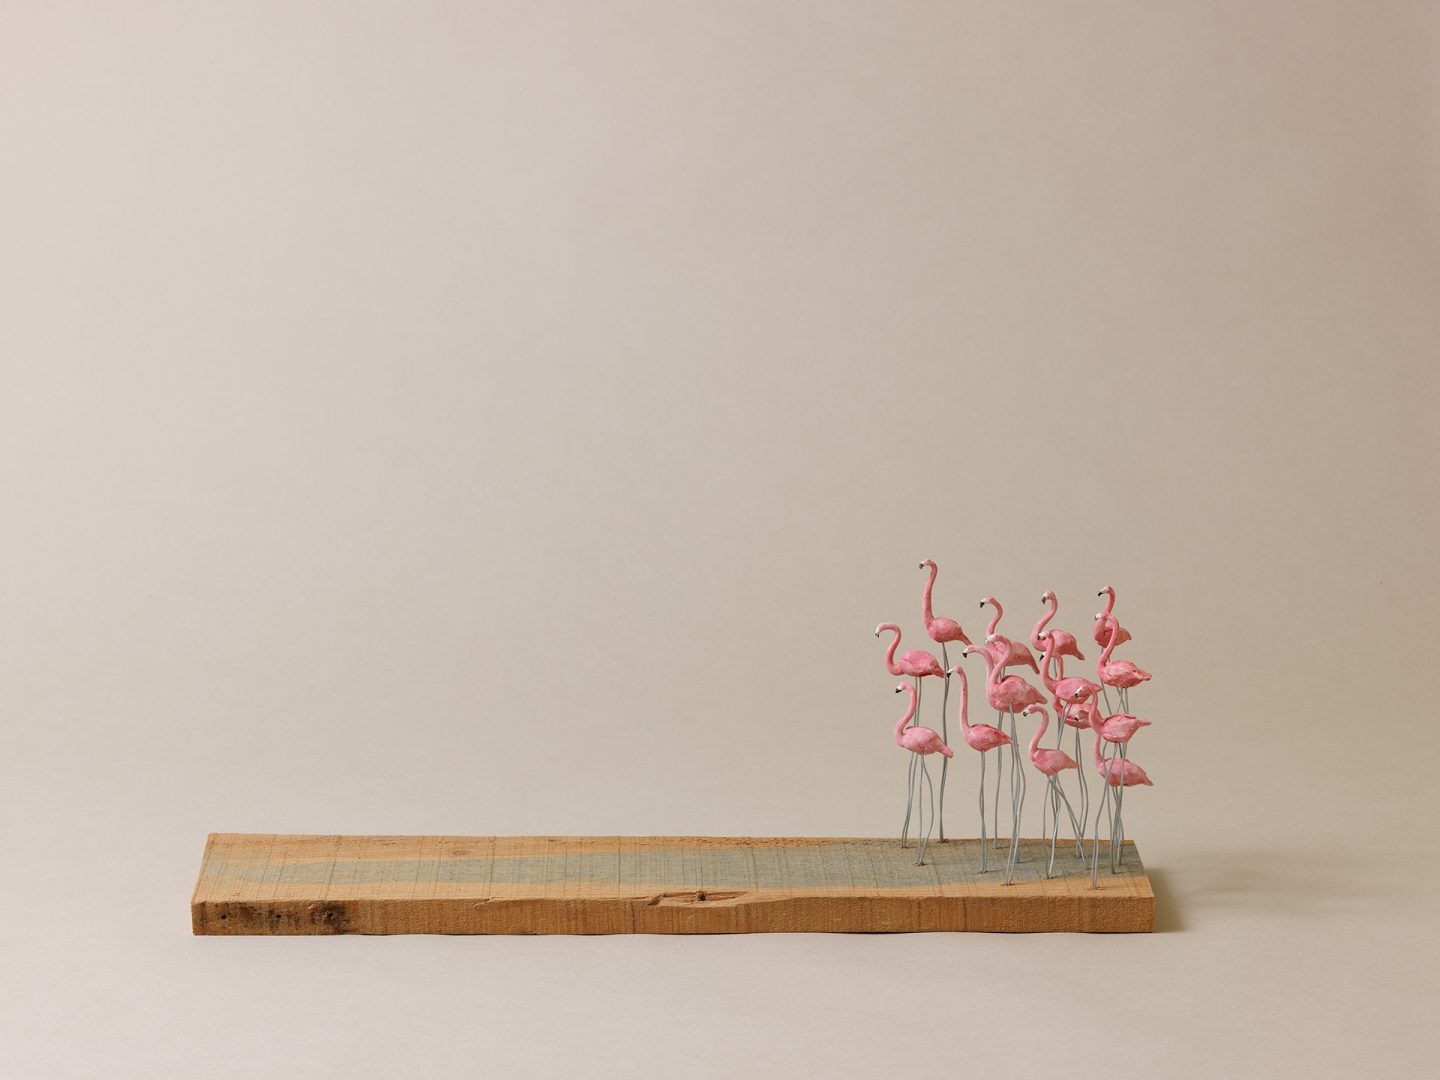 Bild von modellierten Flamingos auf einer Holzplatte. ©Antje Jakob